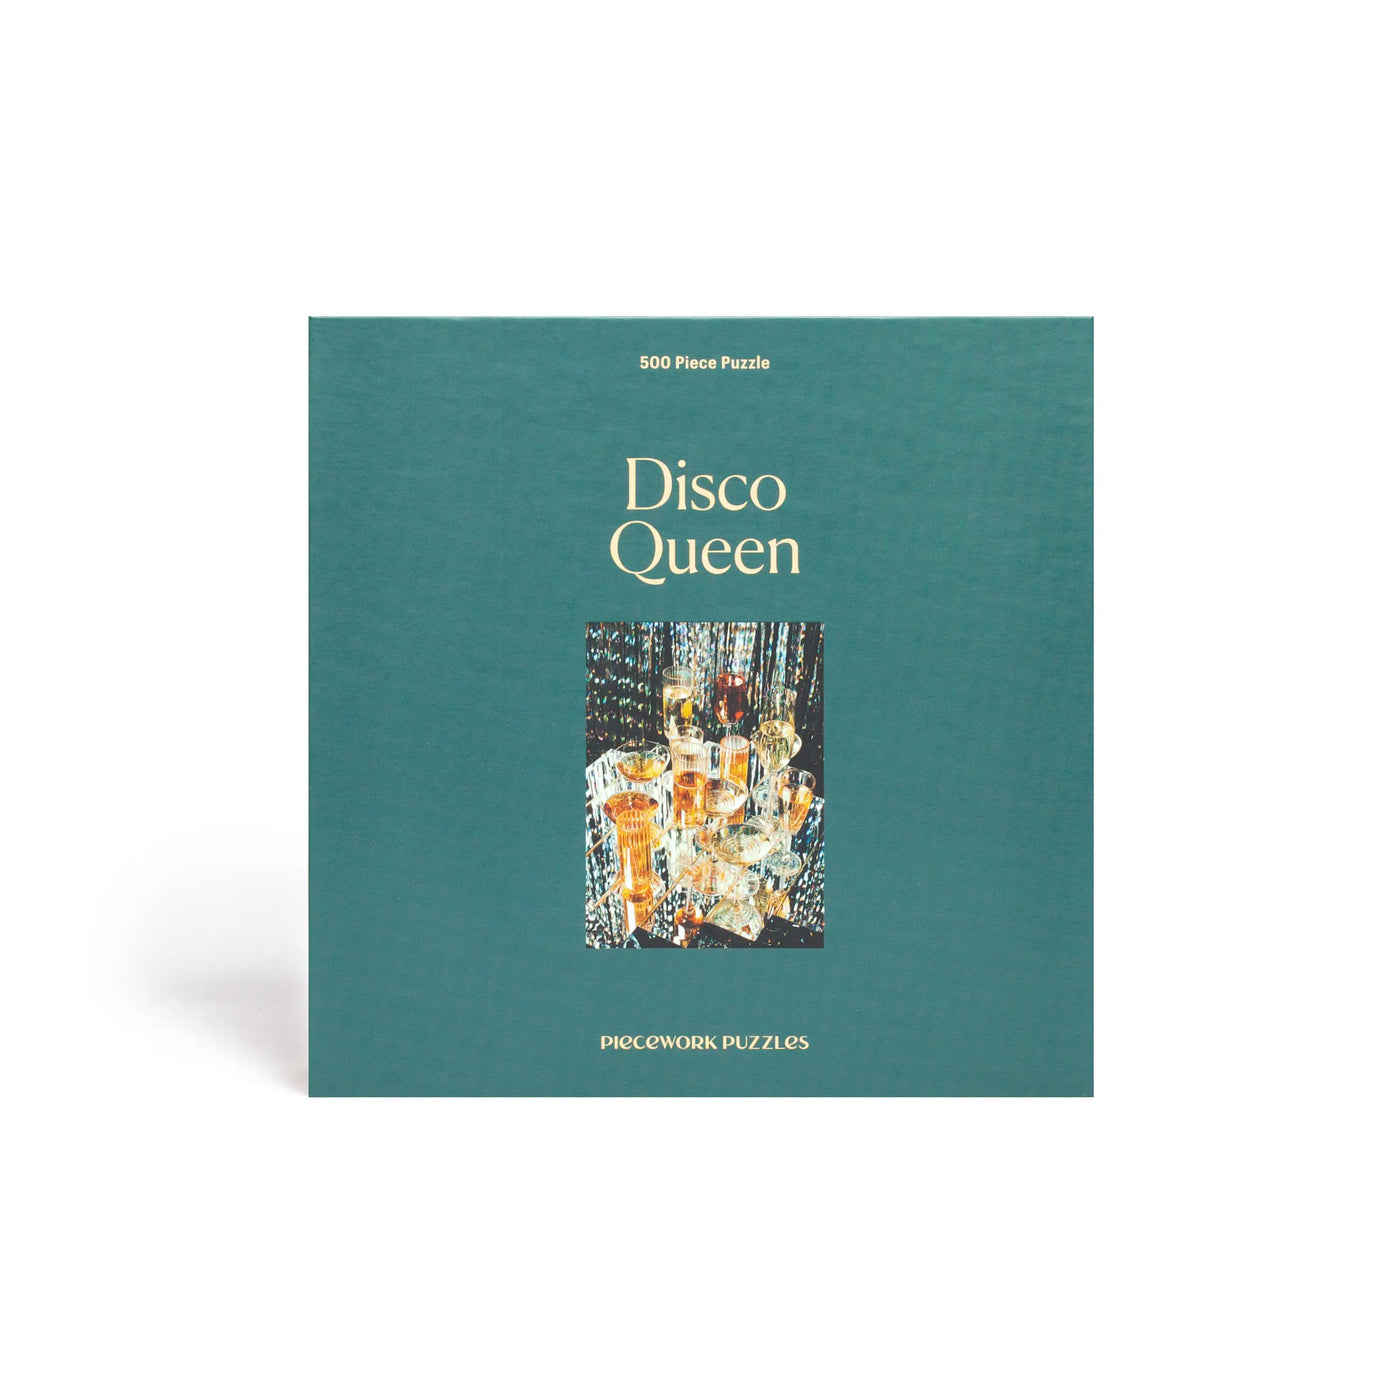 Disco Queen (500 piece puzzle)